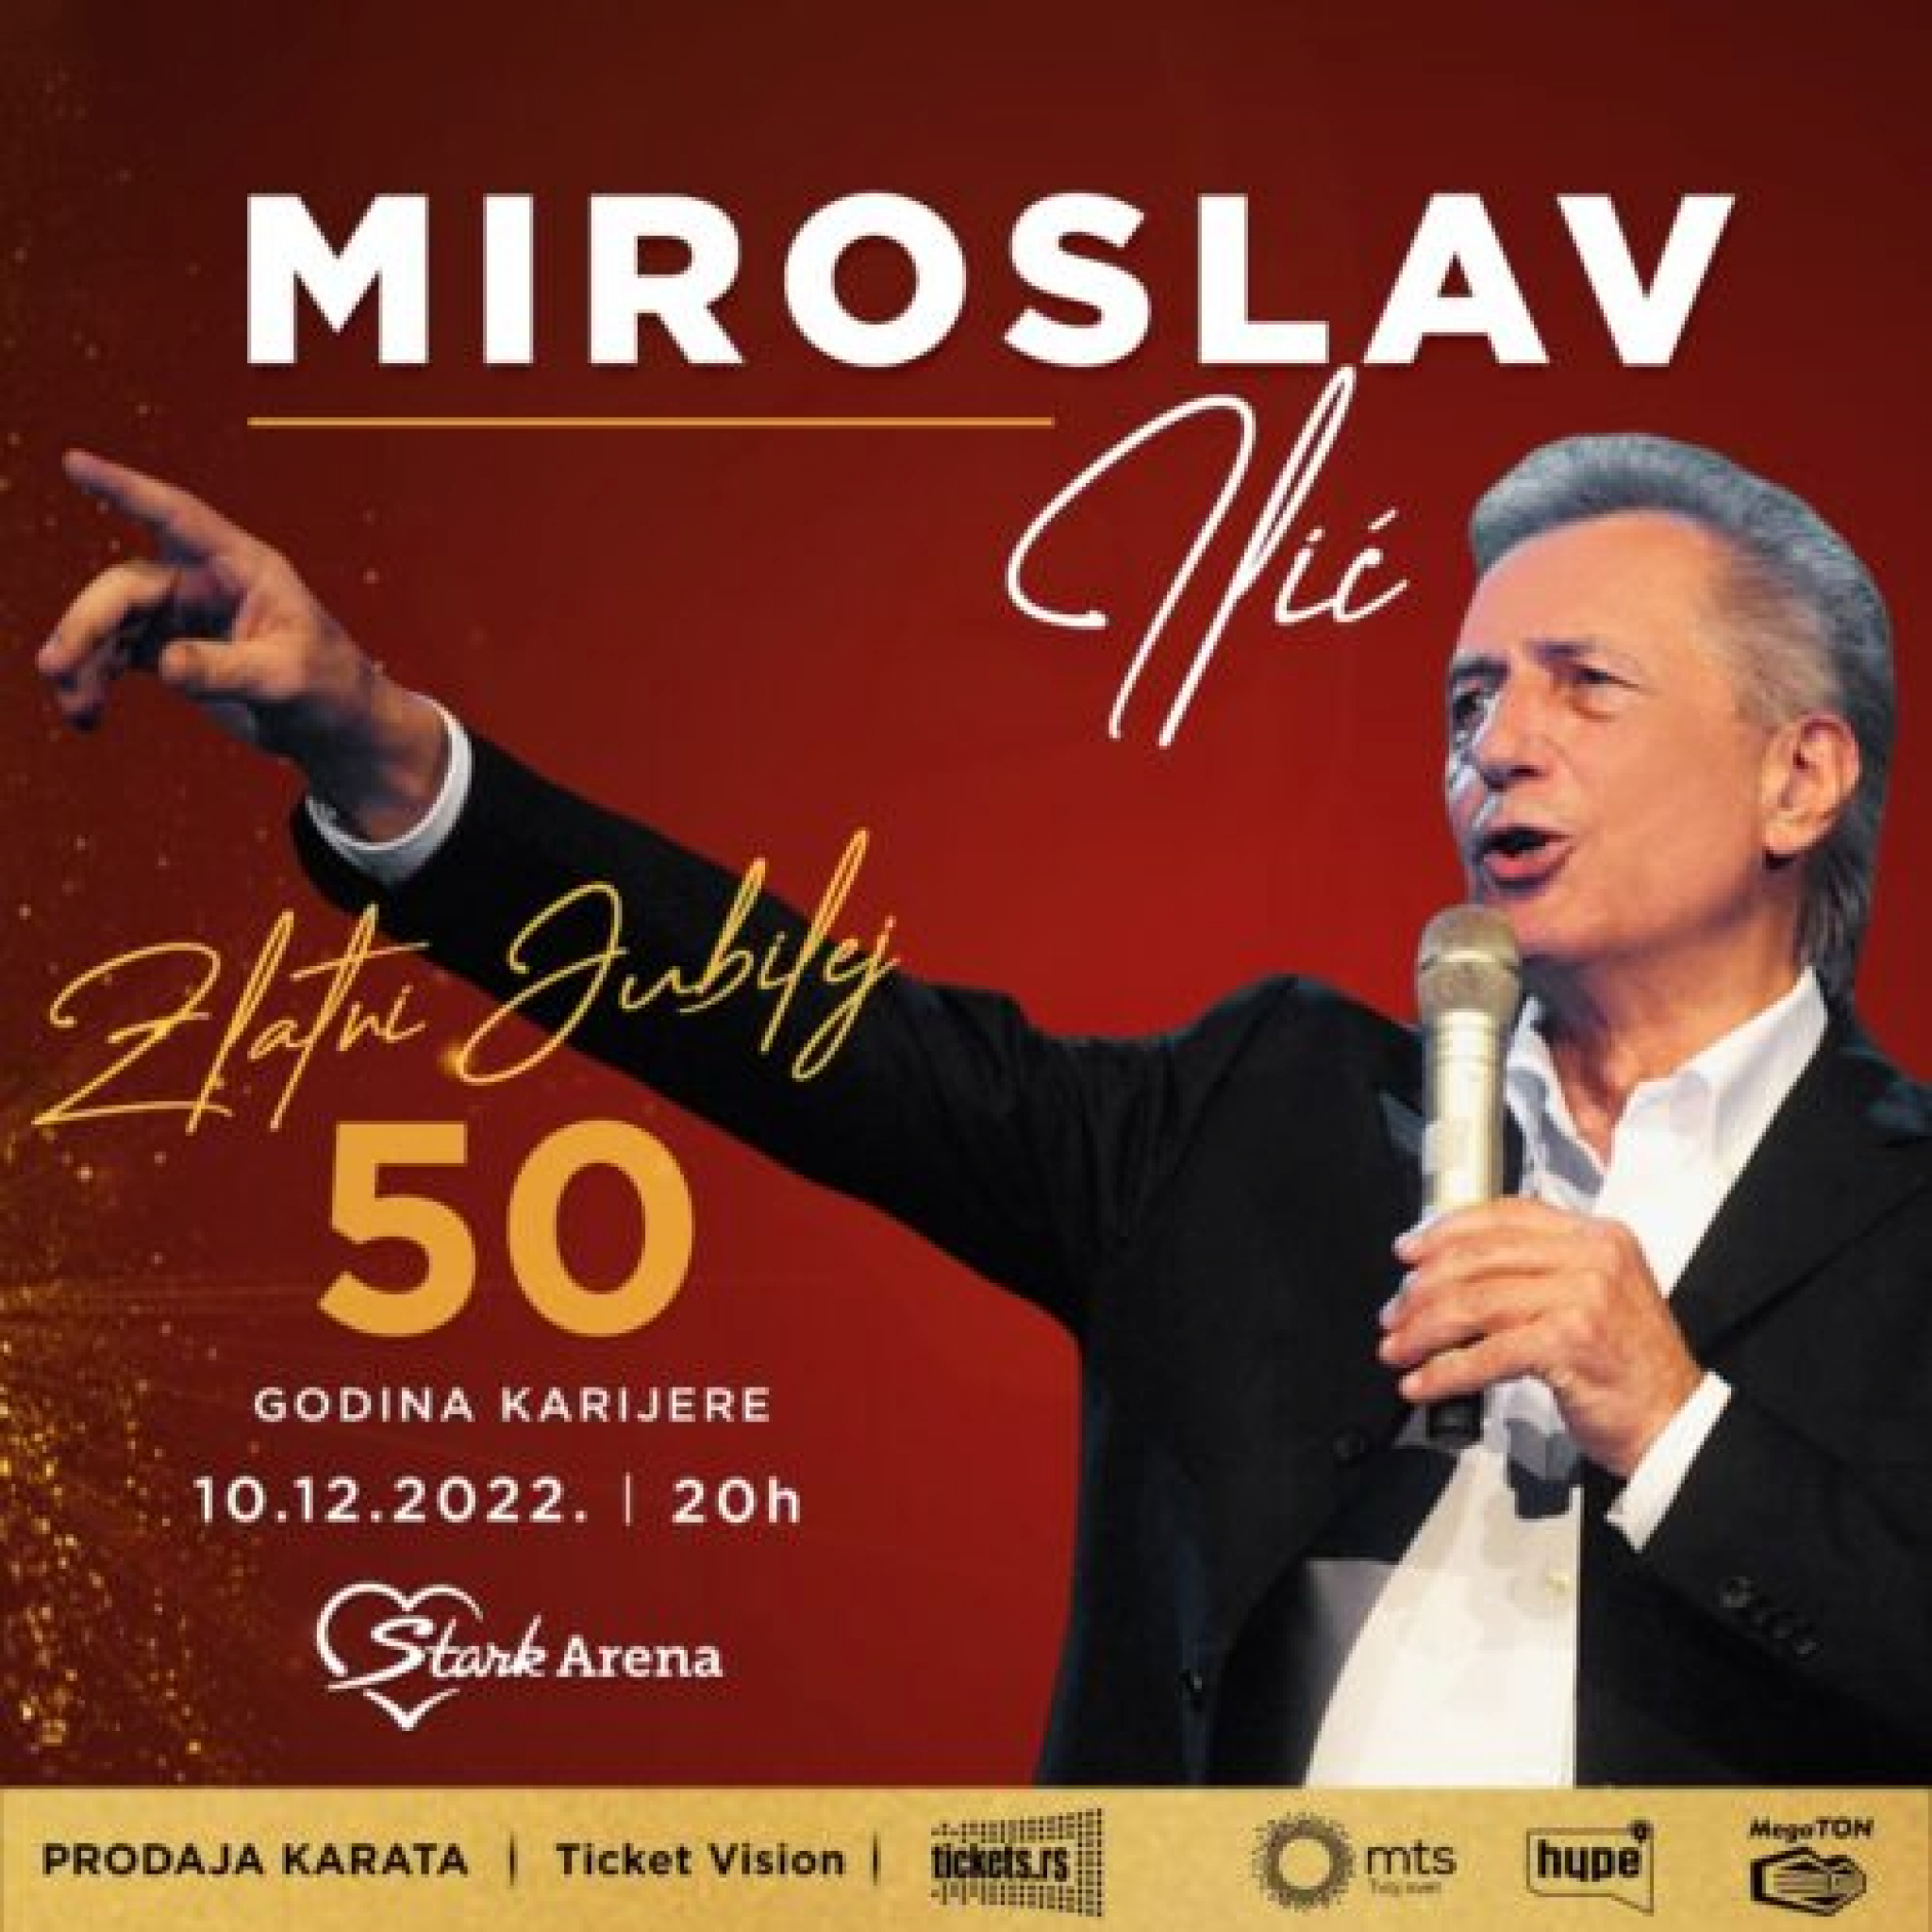 50 GODINA KARIJERE U ŠTARK ARENI! Miroslav Ilić obeležava svoj jubilej na grandiozan način!